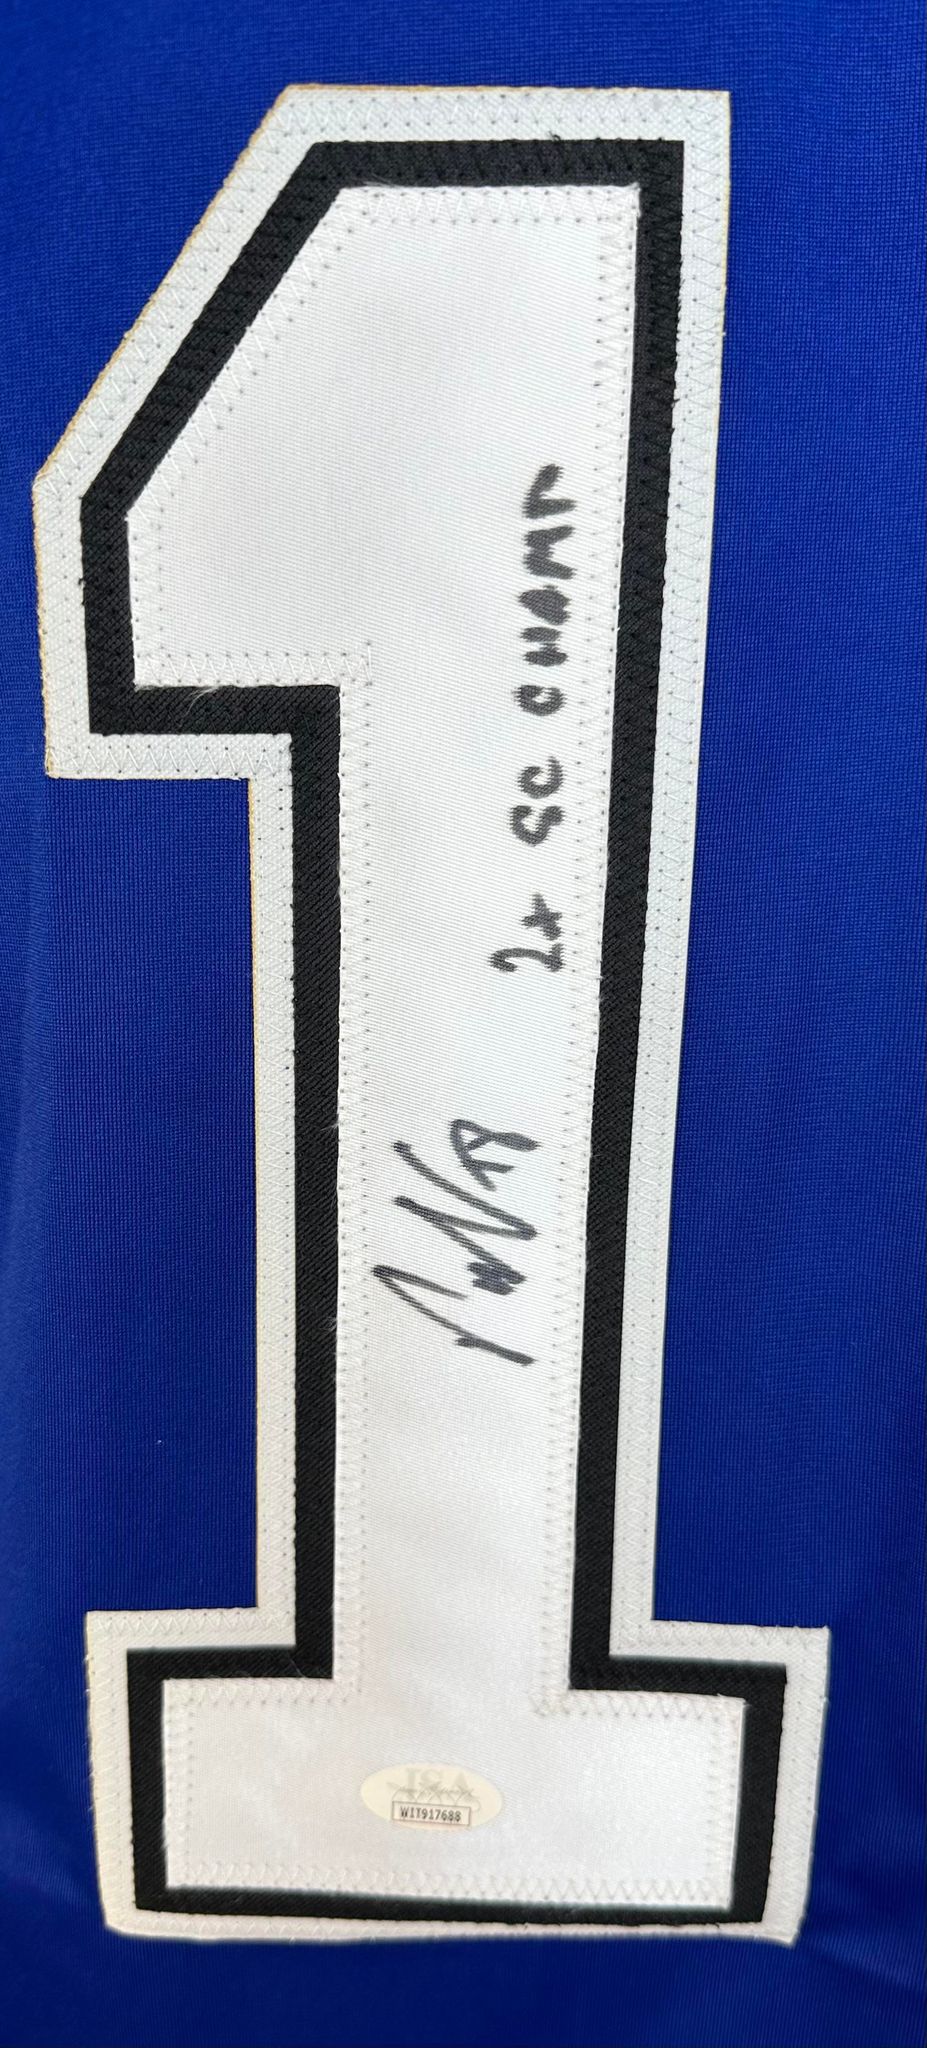 Ondrej Palat autographed signed inscribed jersey NHL Tampa Bay Lightning JSA COA